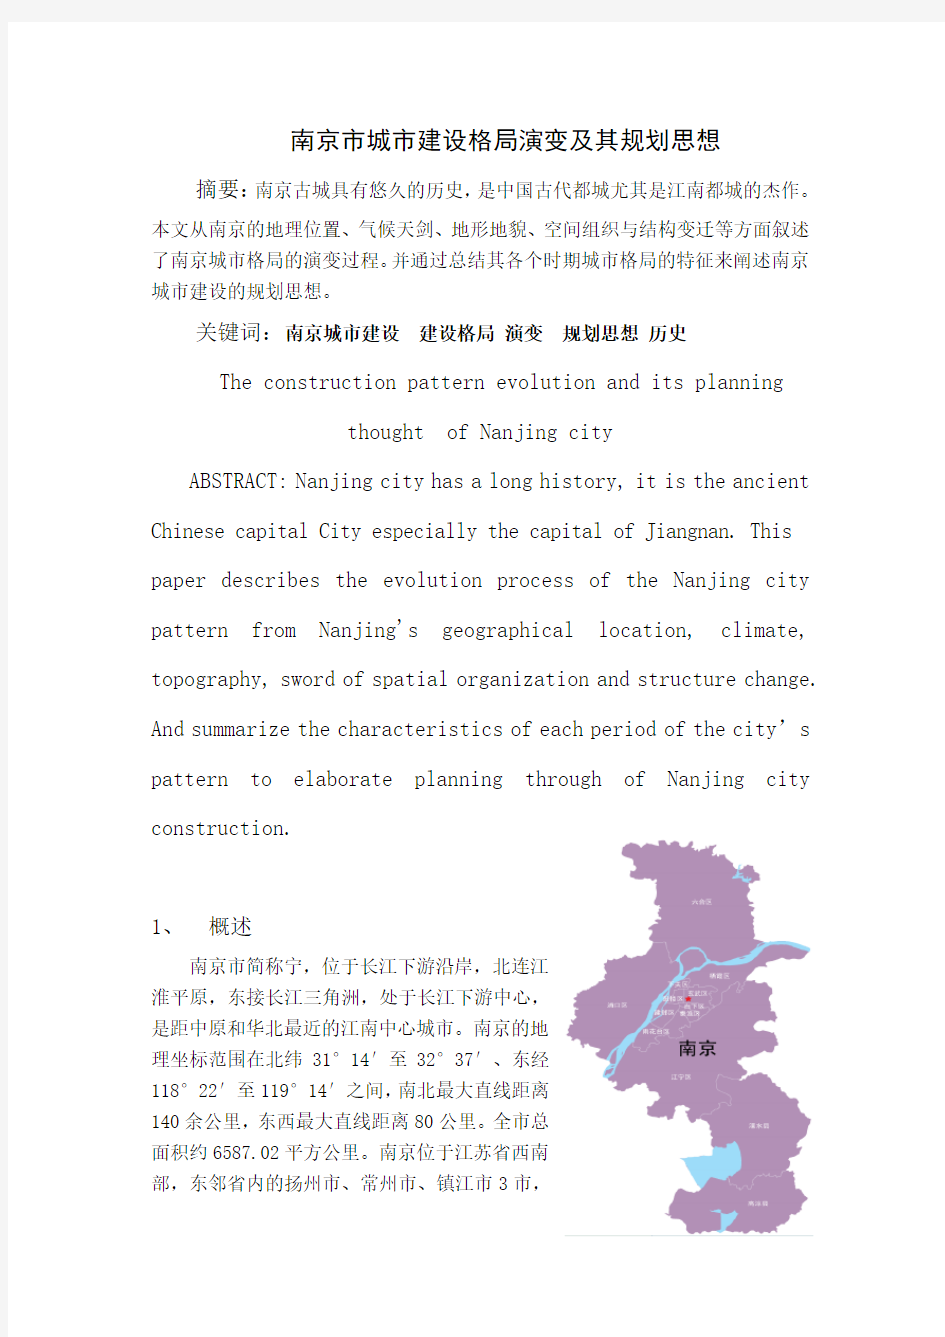 南京市城市建设格局演变及其规划思想